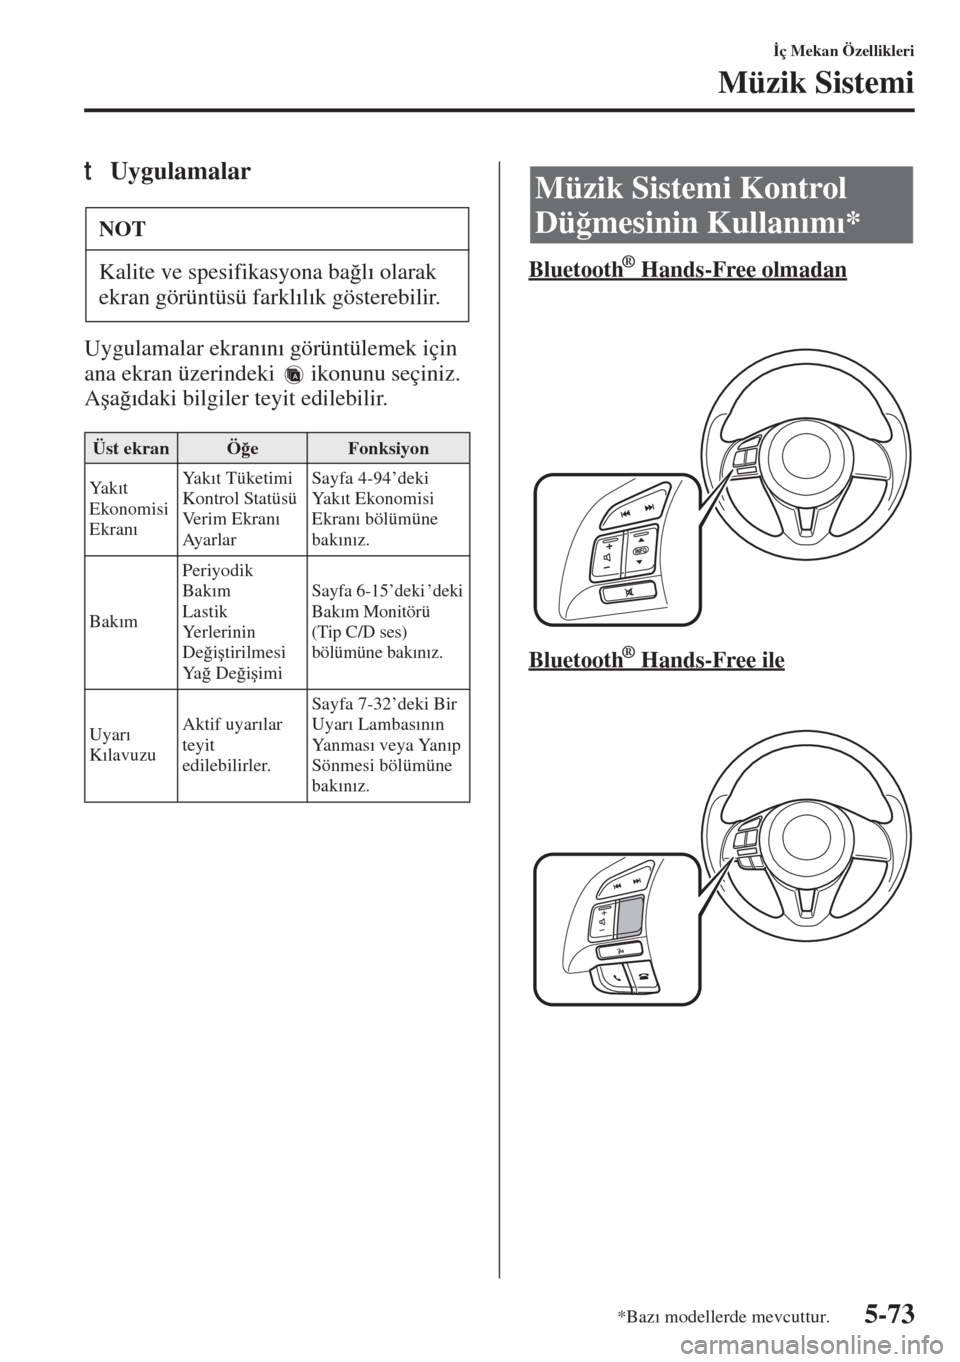 MAZDA MODEL 3 HATCHBACK 2015  Kullanım Kılavuzu (in Turkish) 5-73
�øç Mekan Özellikleri
Müzik Sistemi
tUygulamalar
Uygulamalar ekran�Õn�Õ görüntülemek için 
ana ekran üzerindeki   ikonunu seçiniz. 
A�úa�÷�Õdaki bilgiler teyit edilebilir.Bluetooth